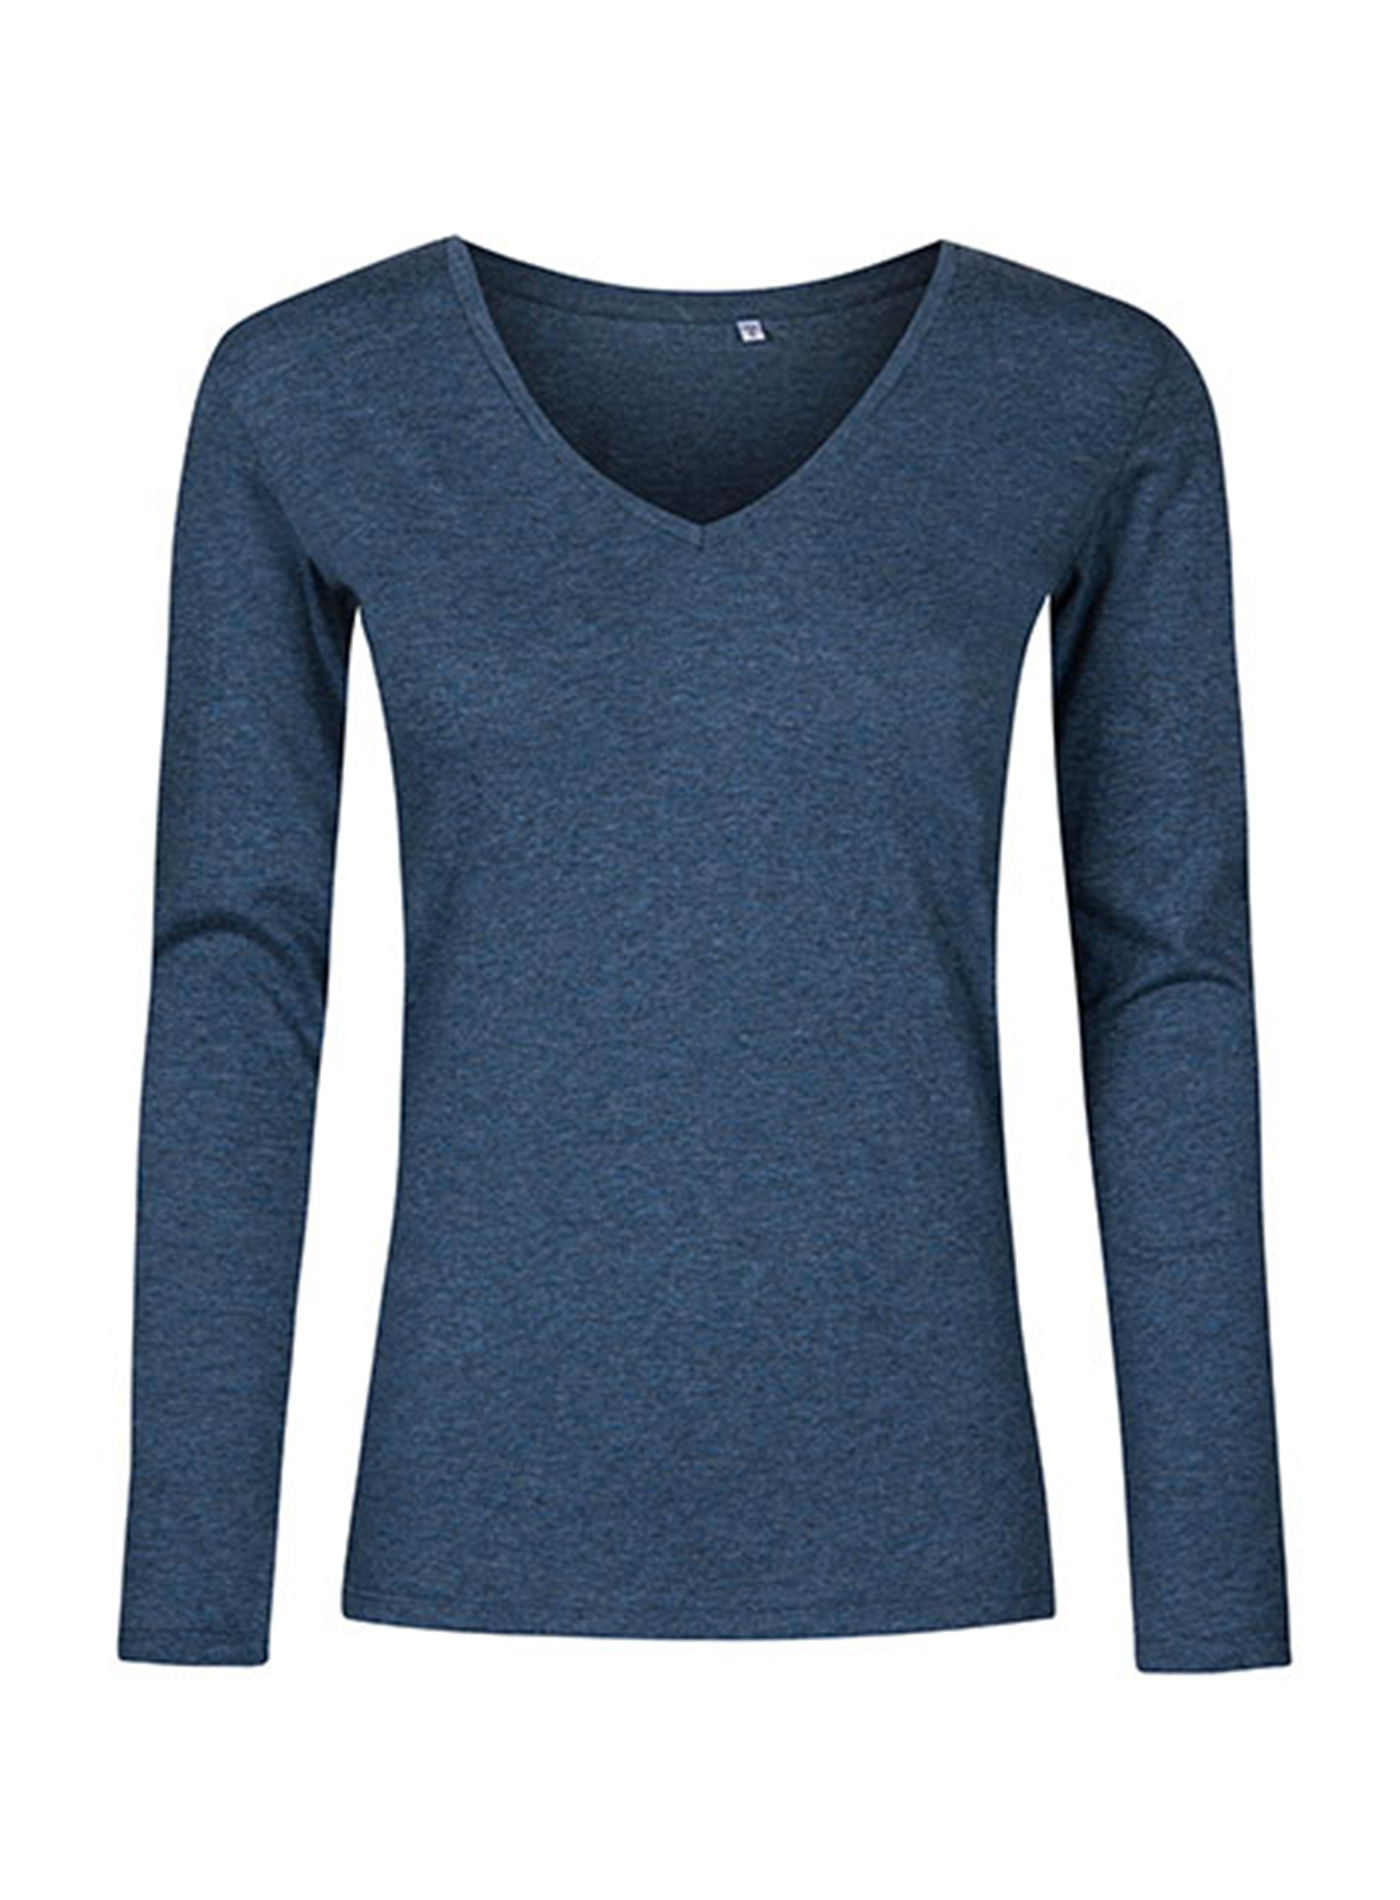 Dámské tričko s dlouhým rukávem a výstřihem do V Promodoro - Tmavě modrá XL